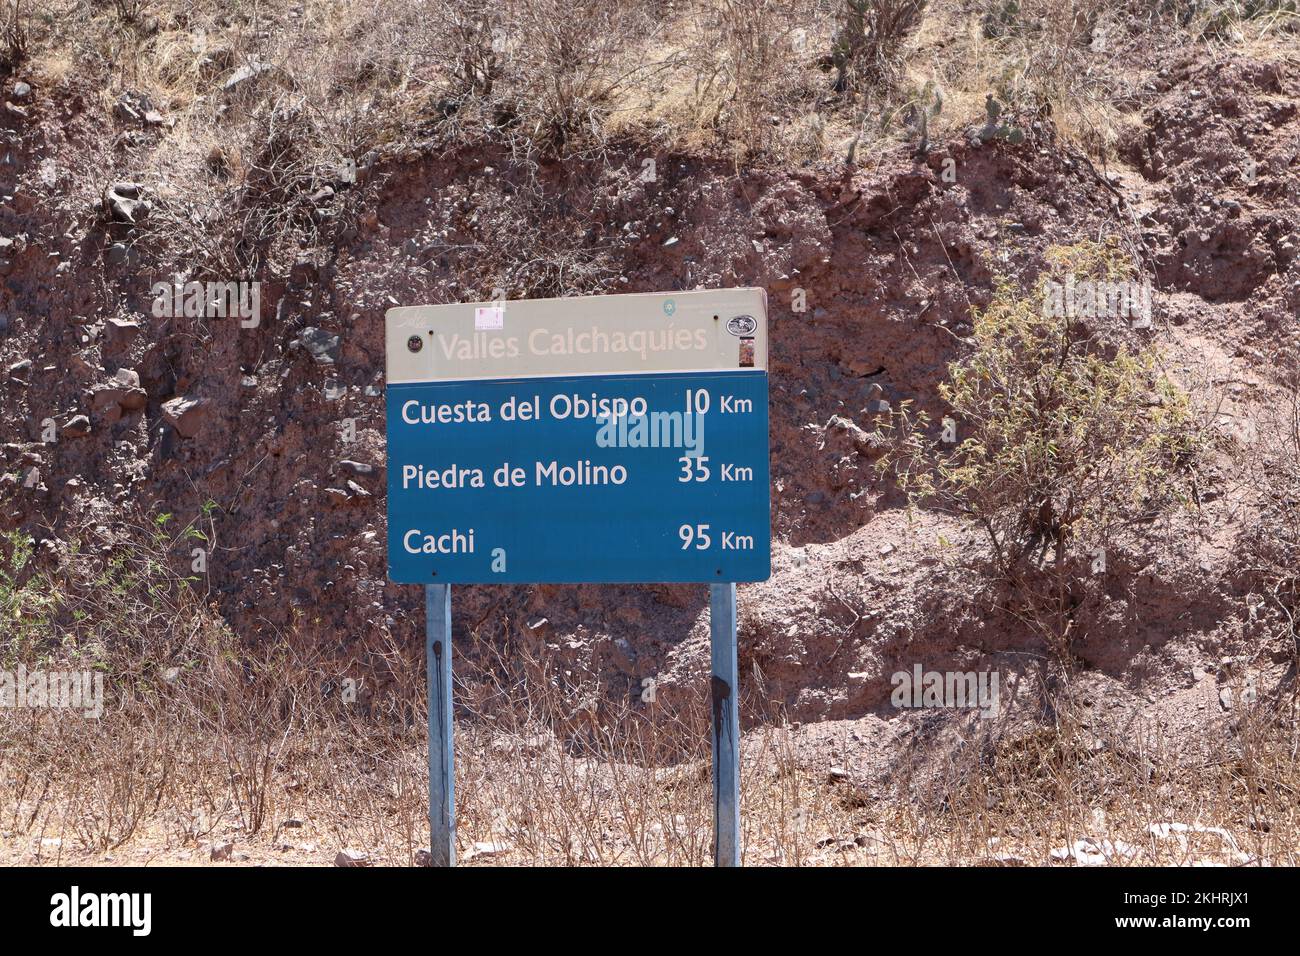 À titre indicatif, montez à bord de la route 40 de Ruta, route 40, autoroute mythique dans le nord de l'argentine Banque D'Images